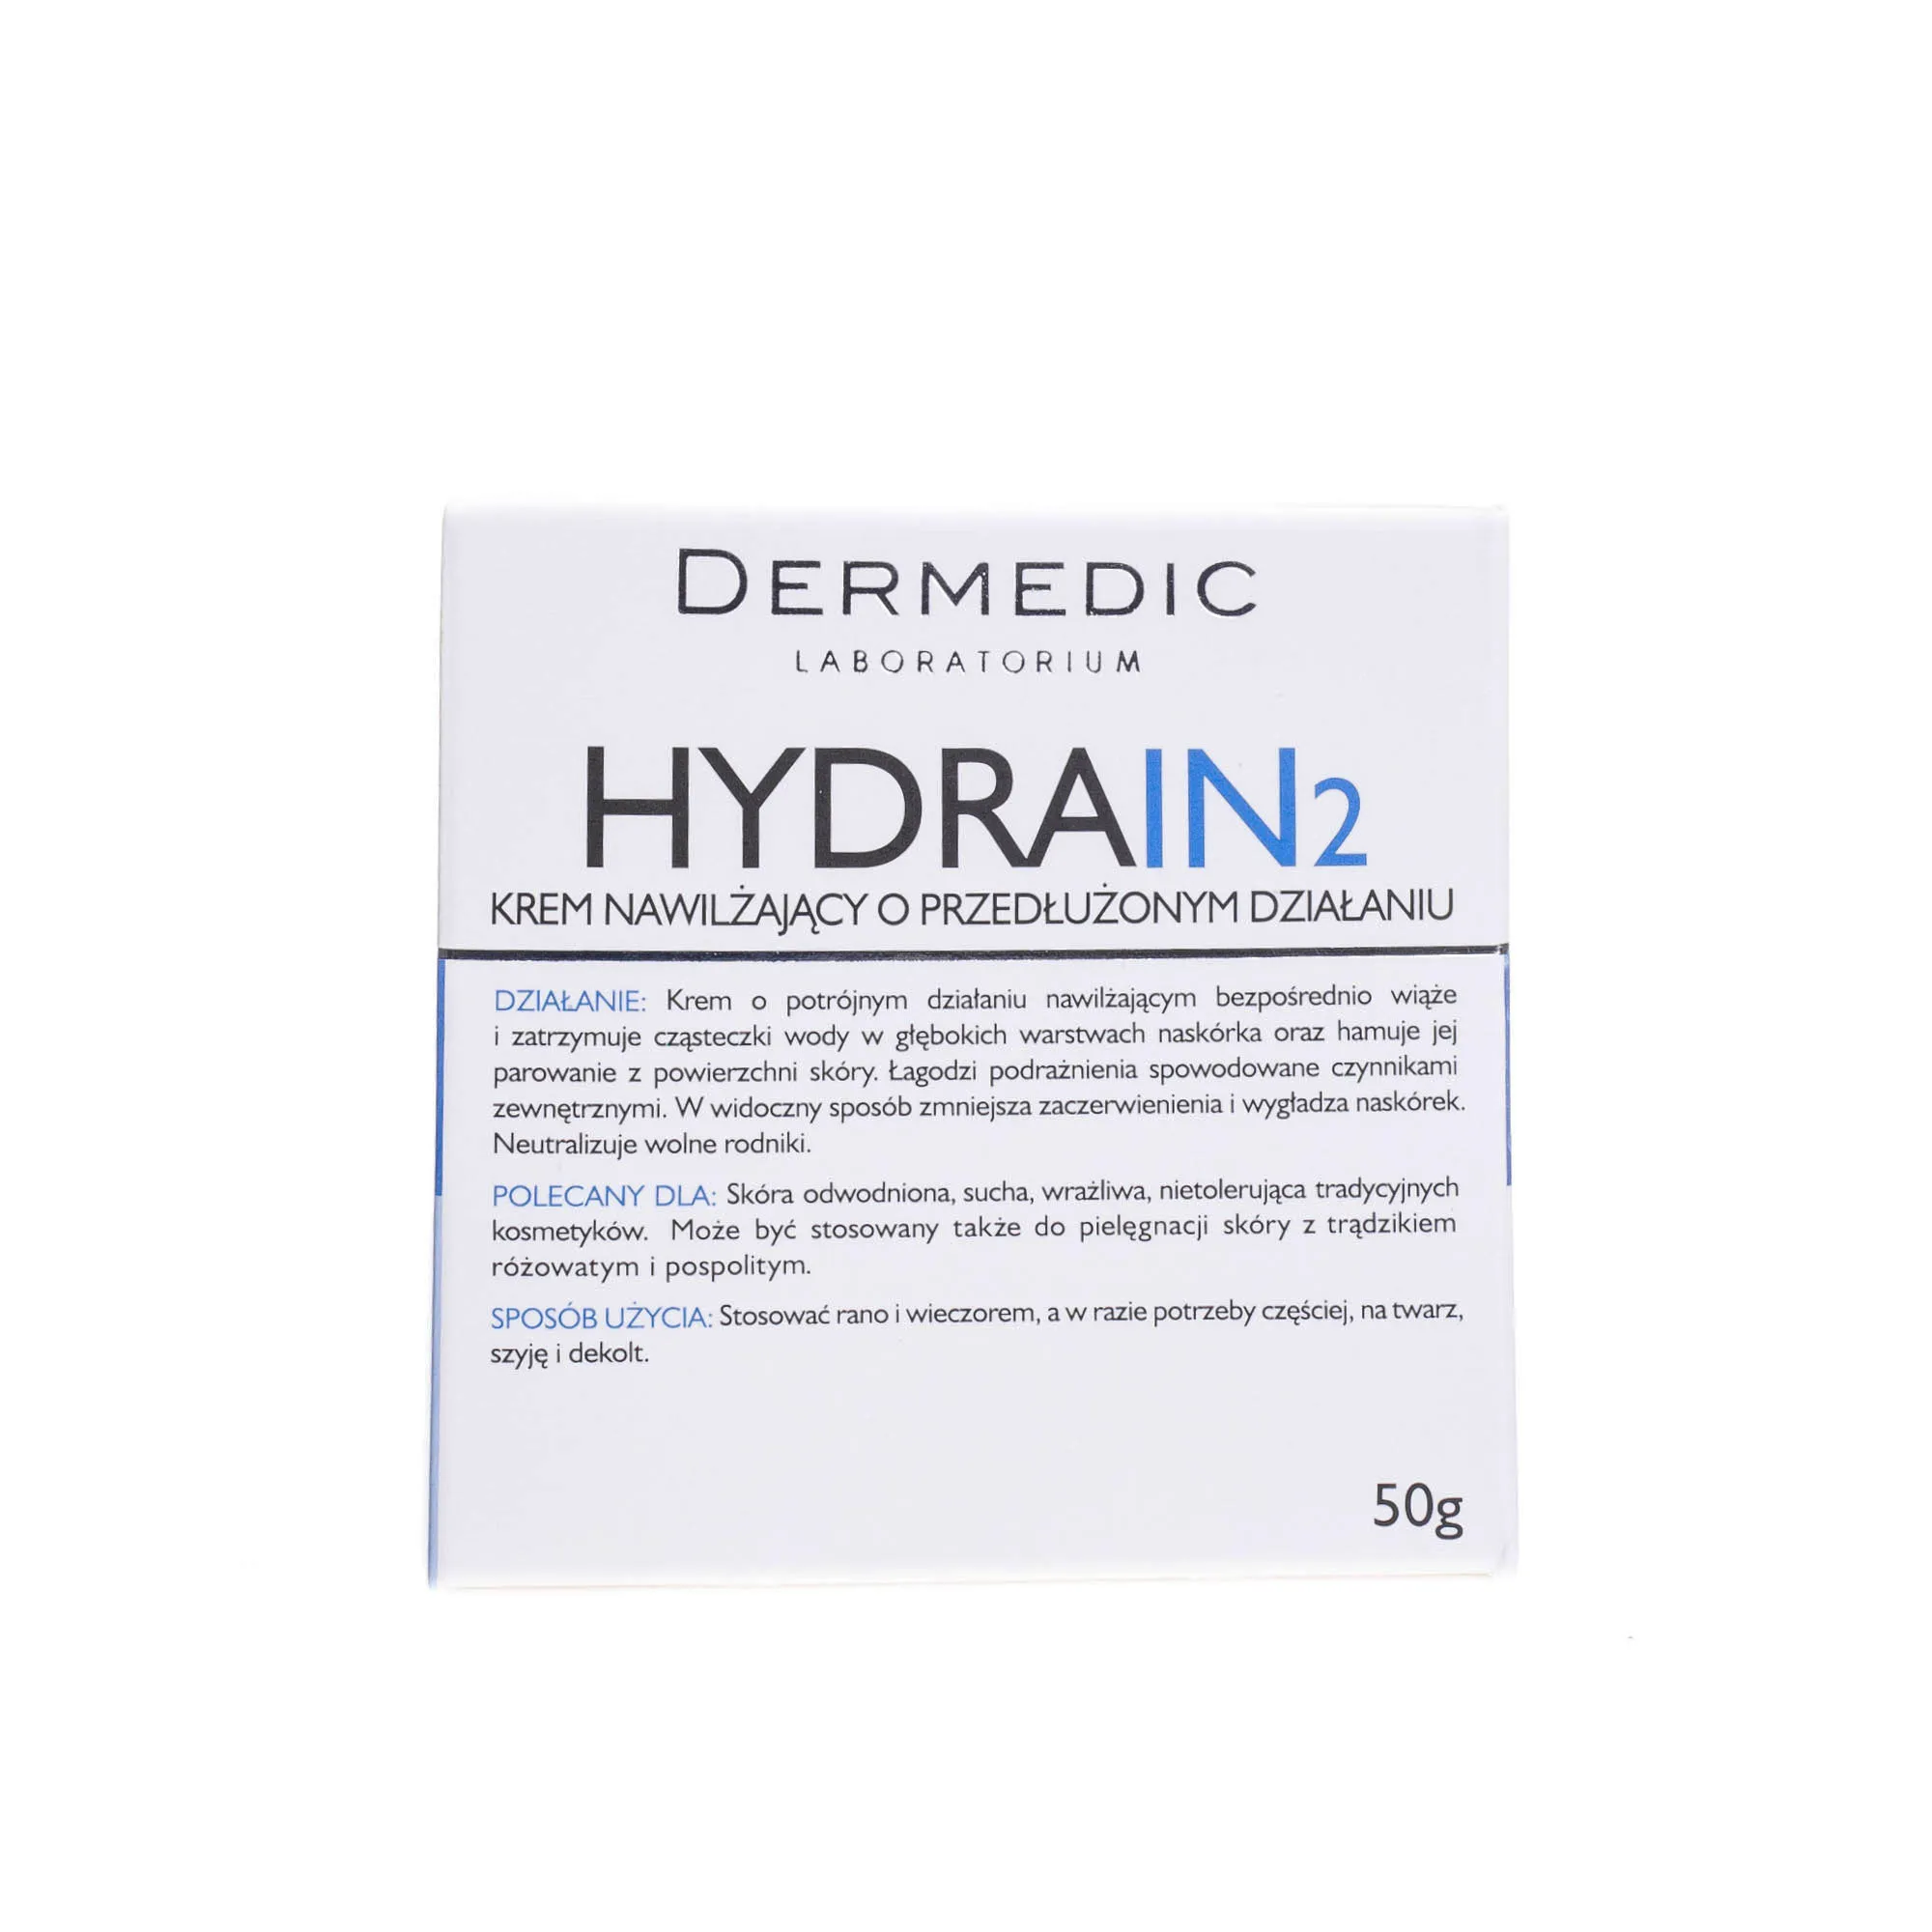 Dermedic Hydrain 2, krem nawilżający o przedłużonym działaniu, 50 g 